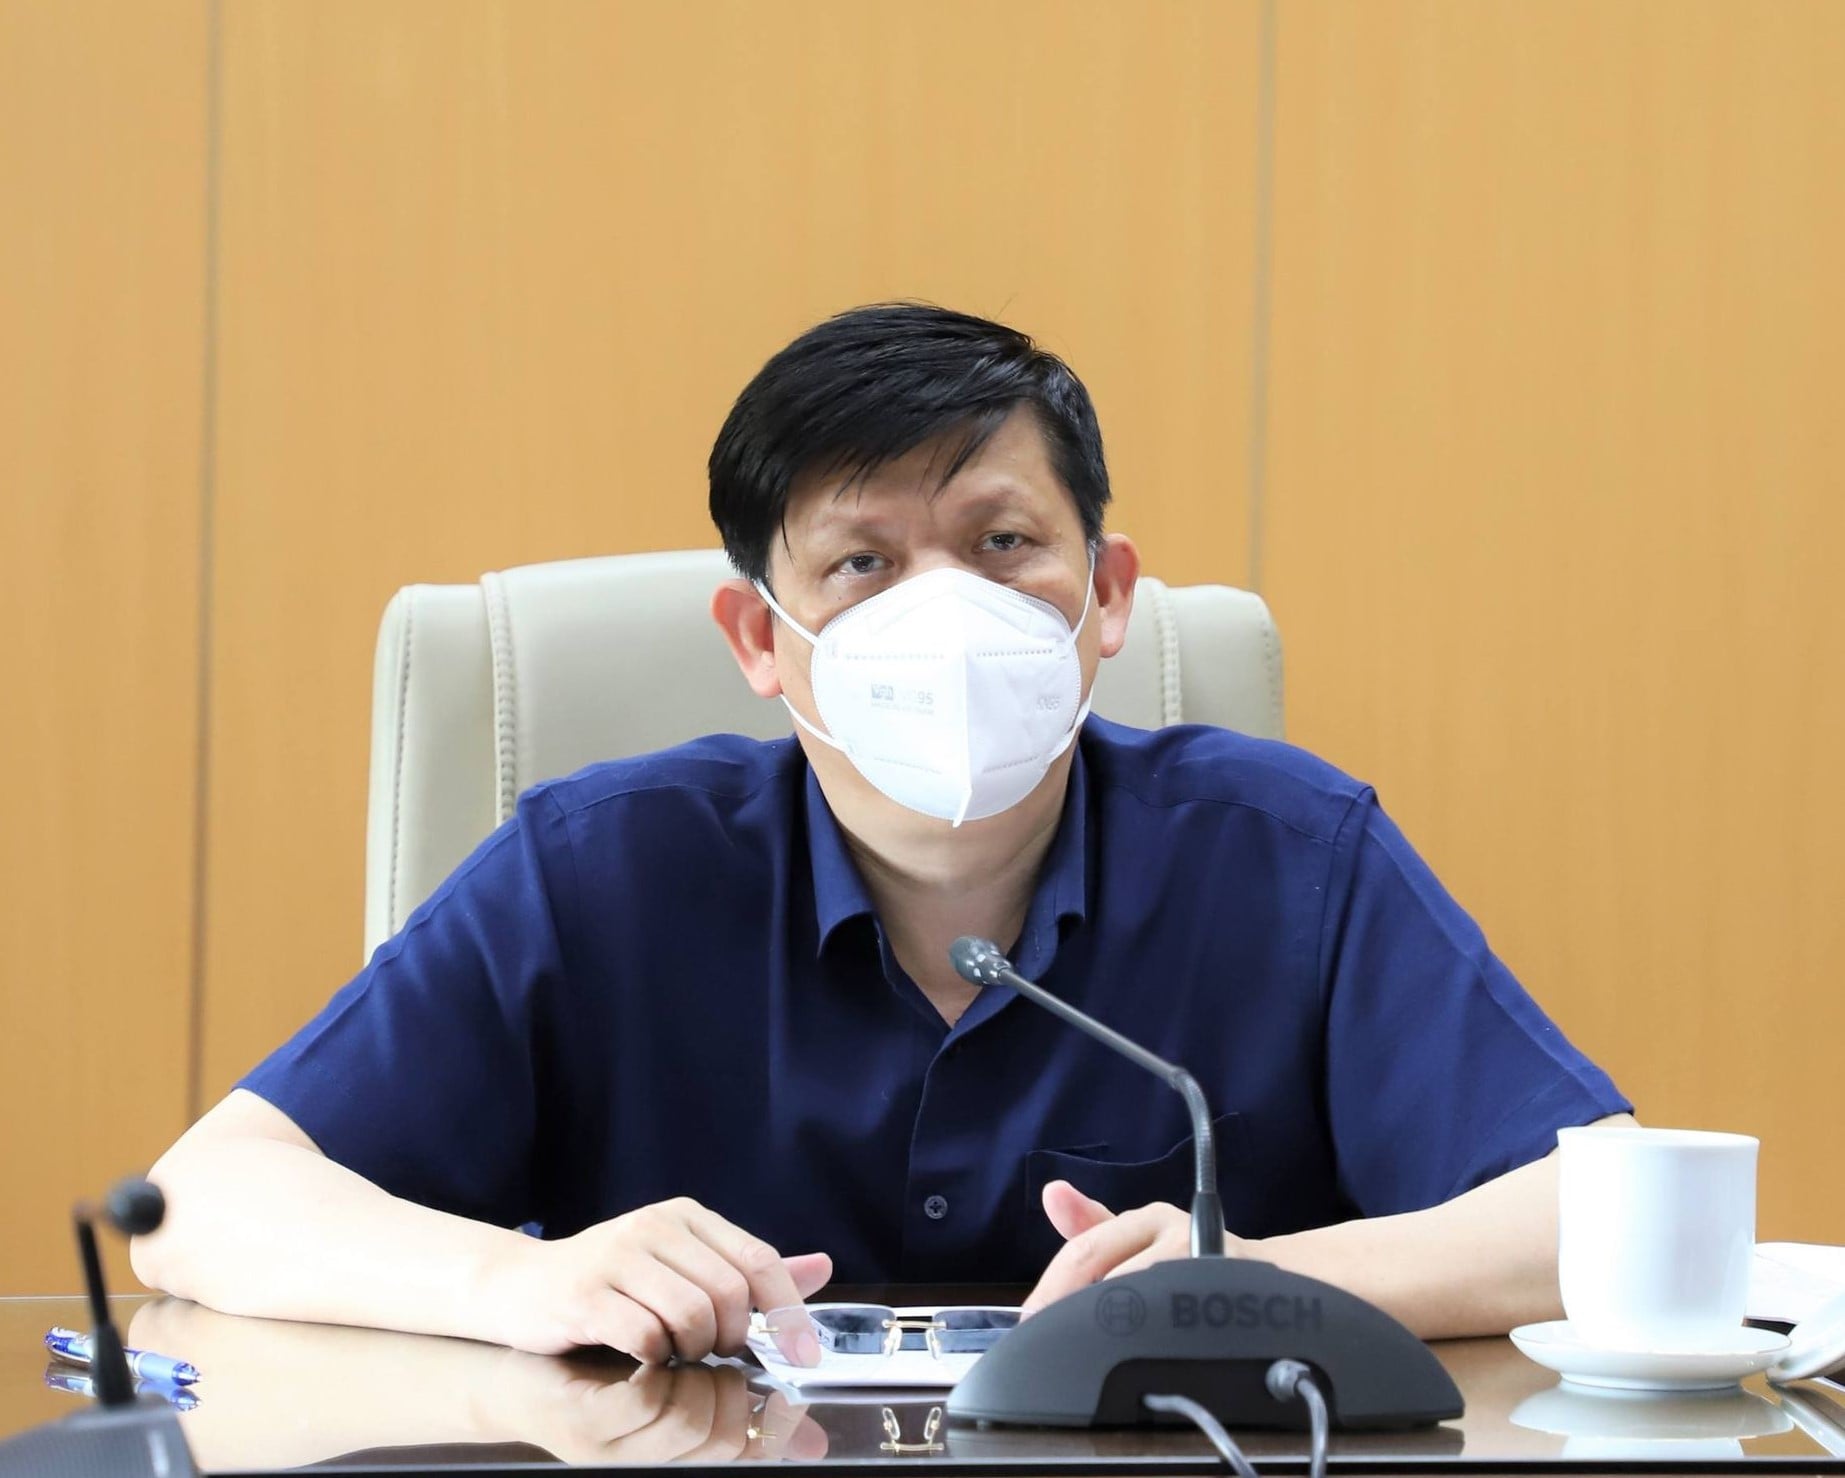 GS.TS Nguyễn Thanh Long - Bộ trưởng Bộ Y tế.